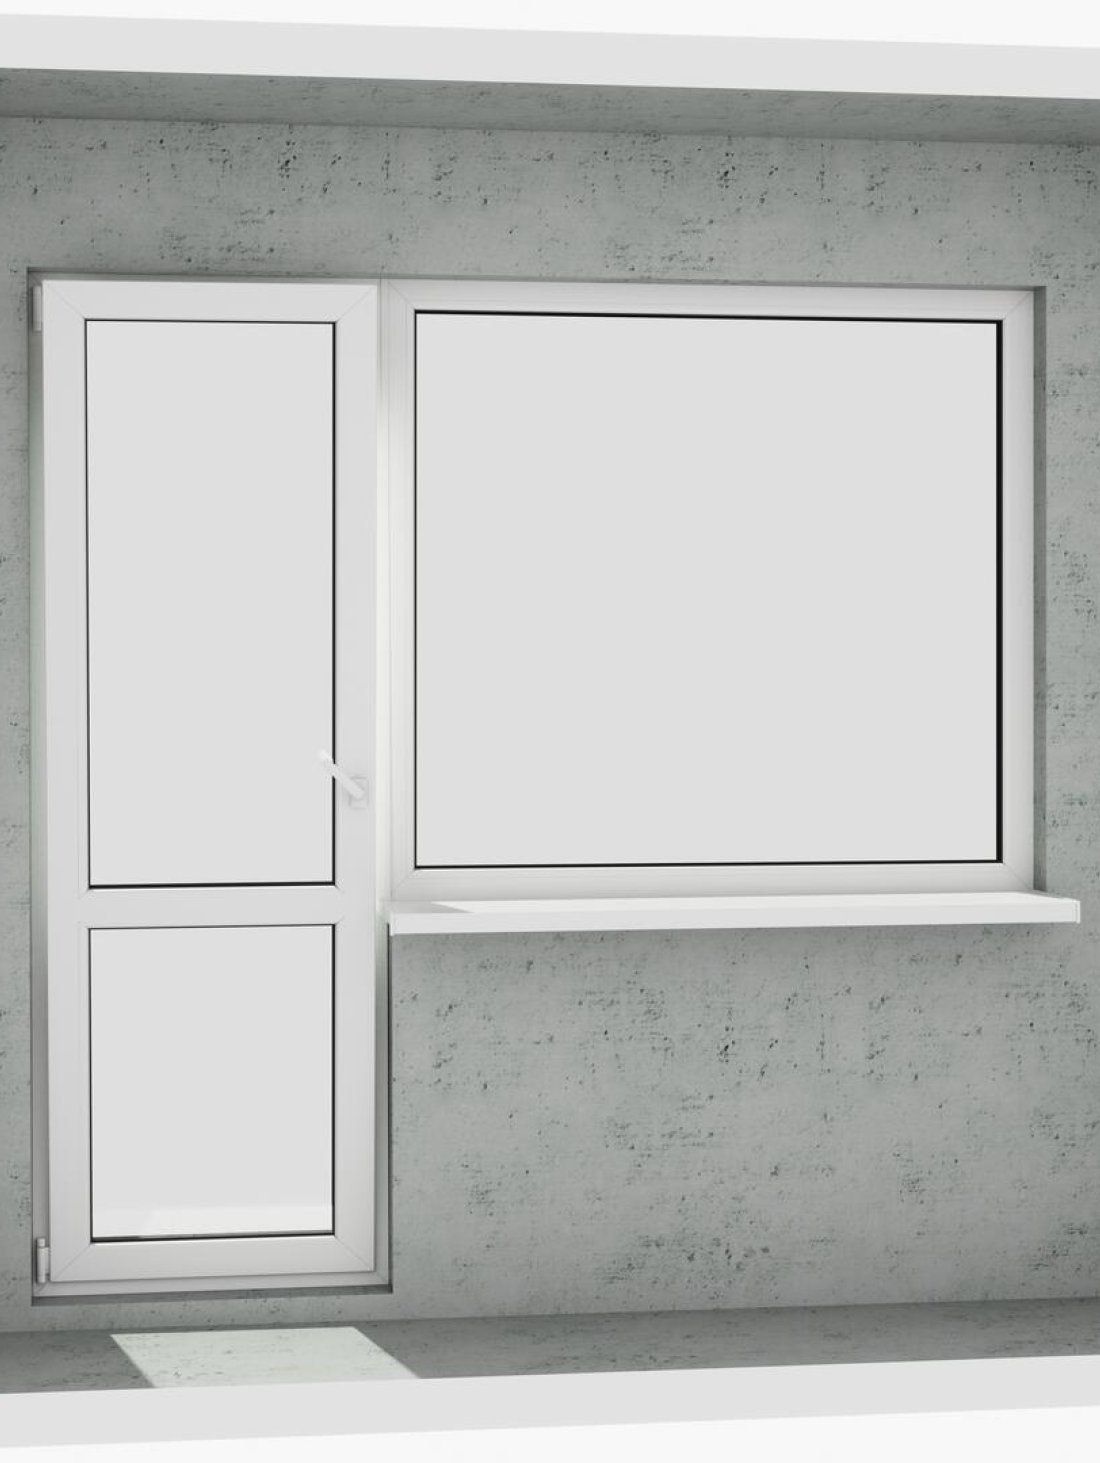 Выход на лоджию (балкон): классический белый металлопластиковый балконный блок (в двери есть режим проветривания, окно не открывается)